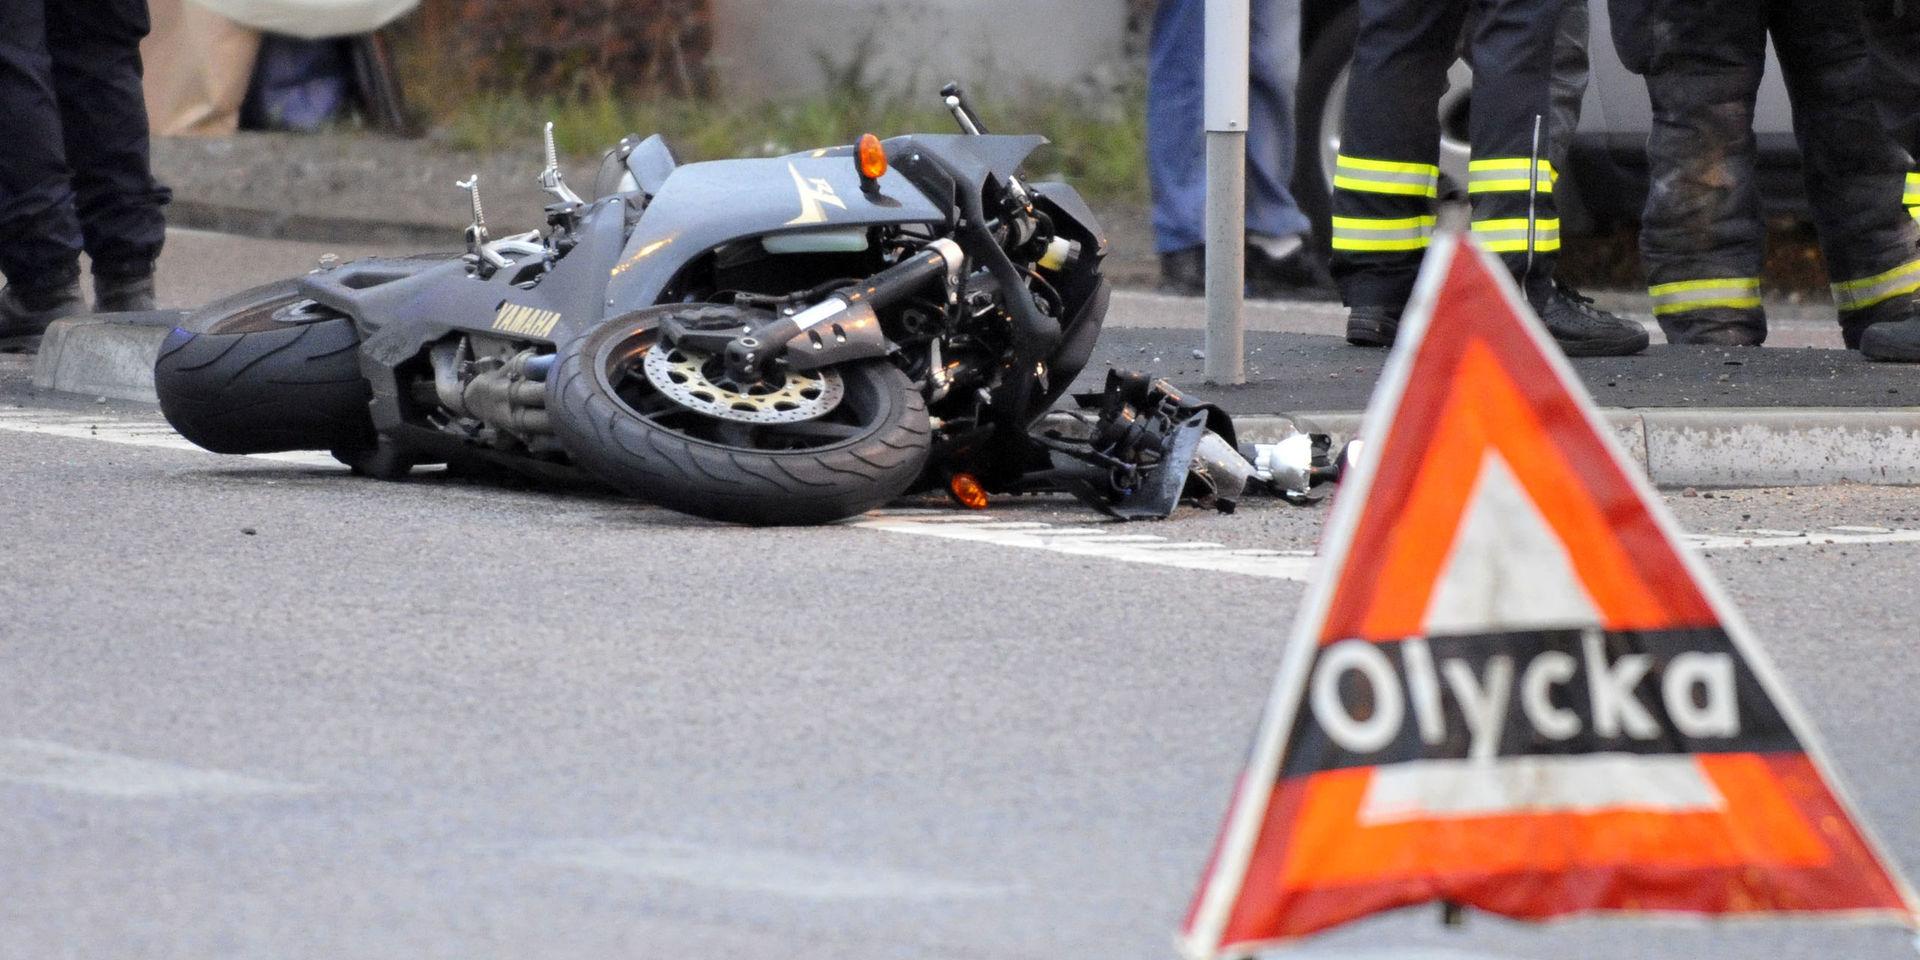 2019 dog 29 personer i motorcykelolyckor i Sverige, en tydlig minskning från 2018 då 47 personer omkom. Arkivbild.